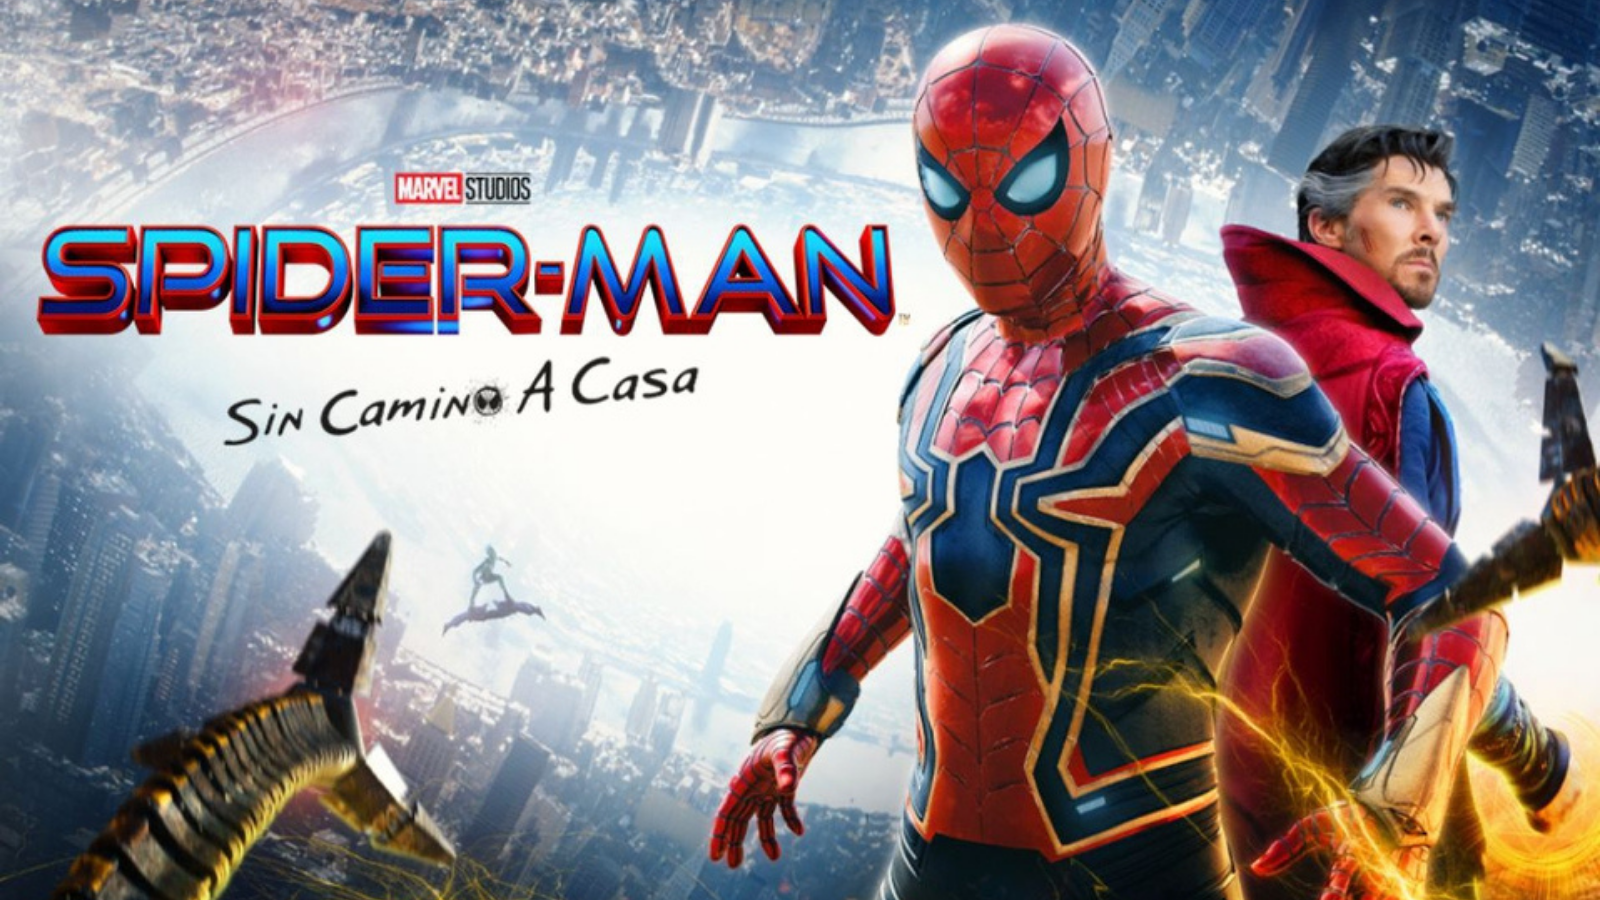 Doctor Octopus sorprende a los fans en estreno de “Spider-Man: No Way Home”  - Austin Latino